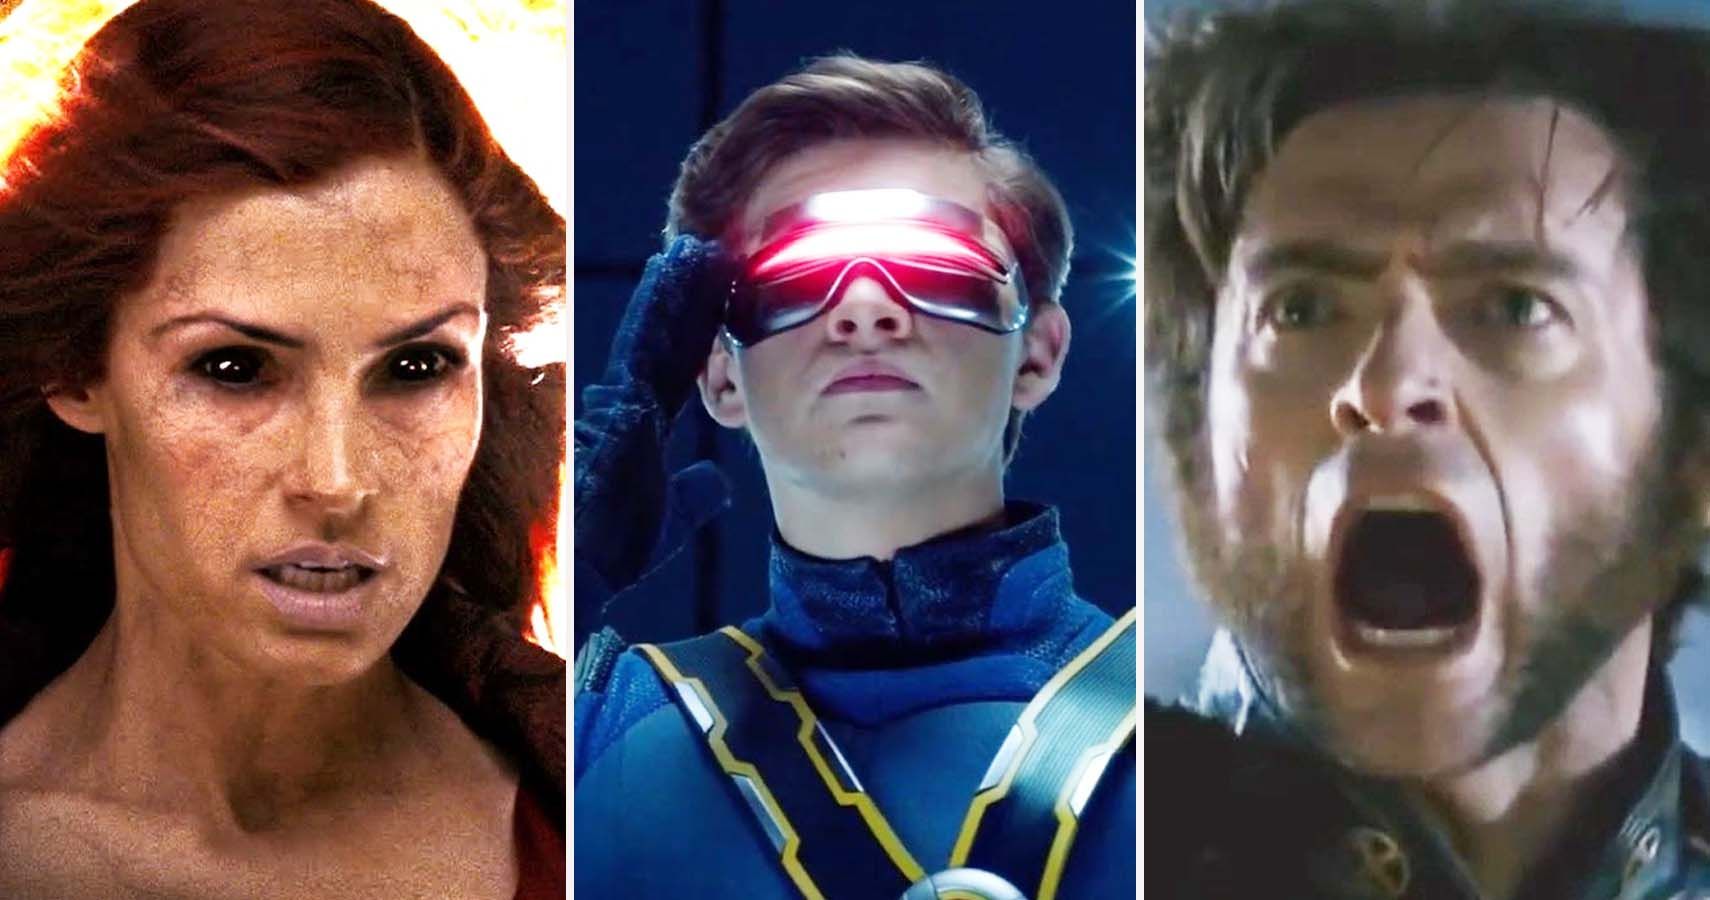 cyclops x men movie costume